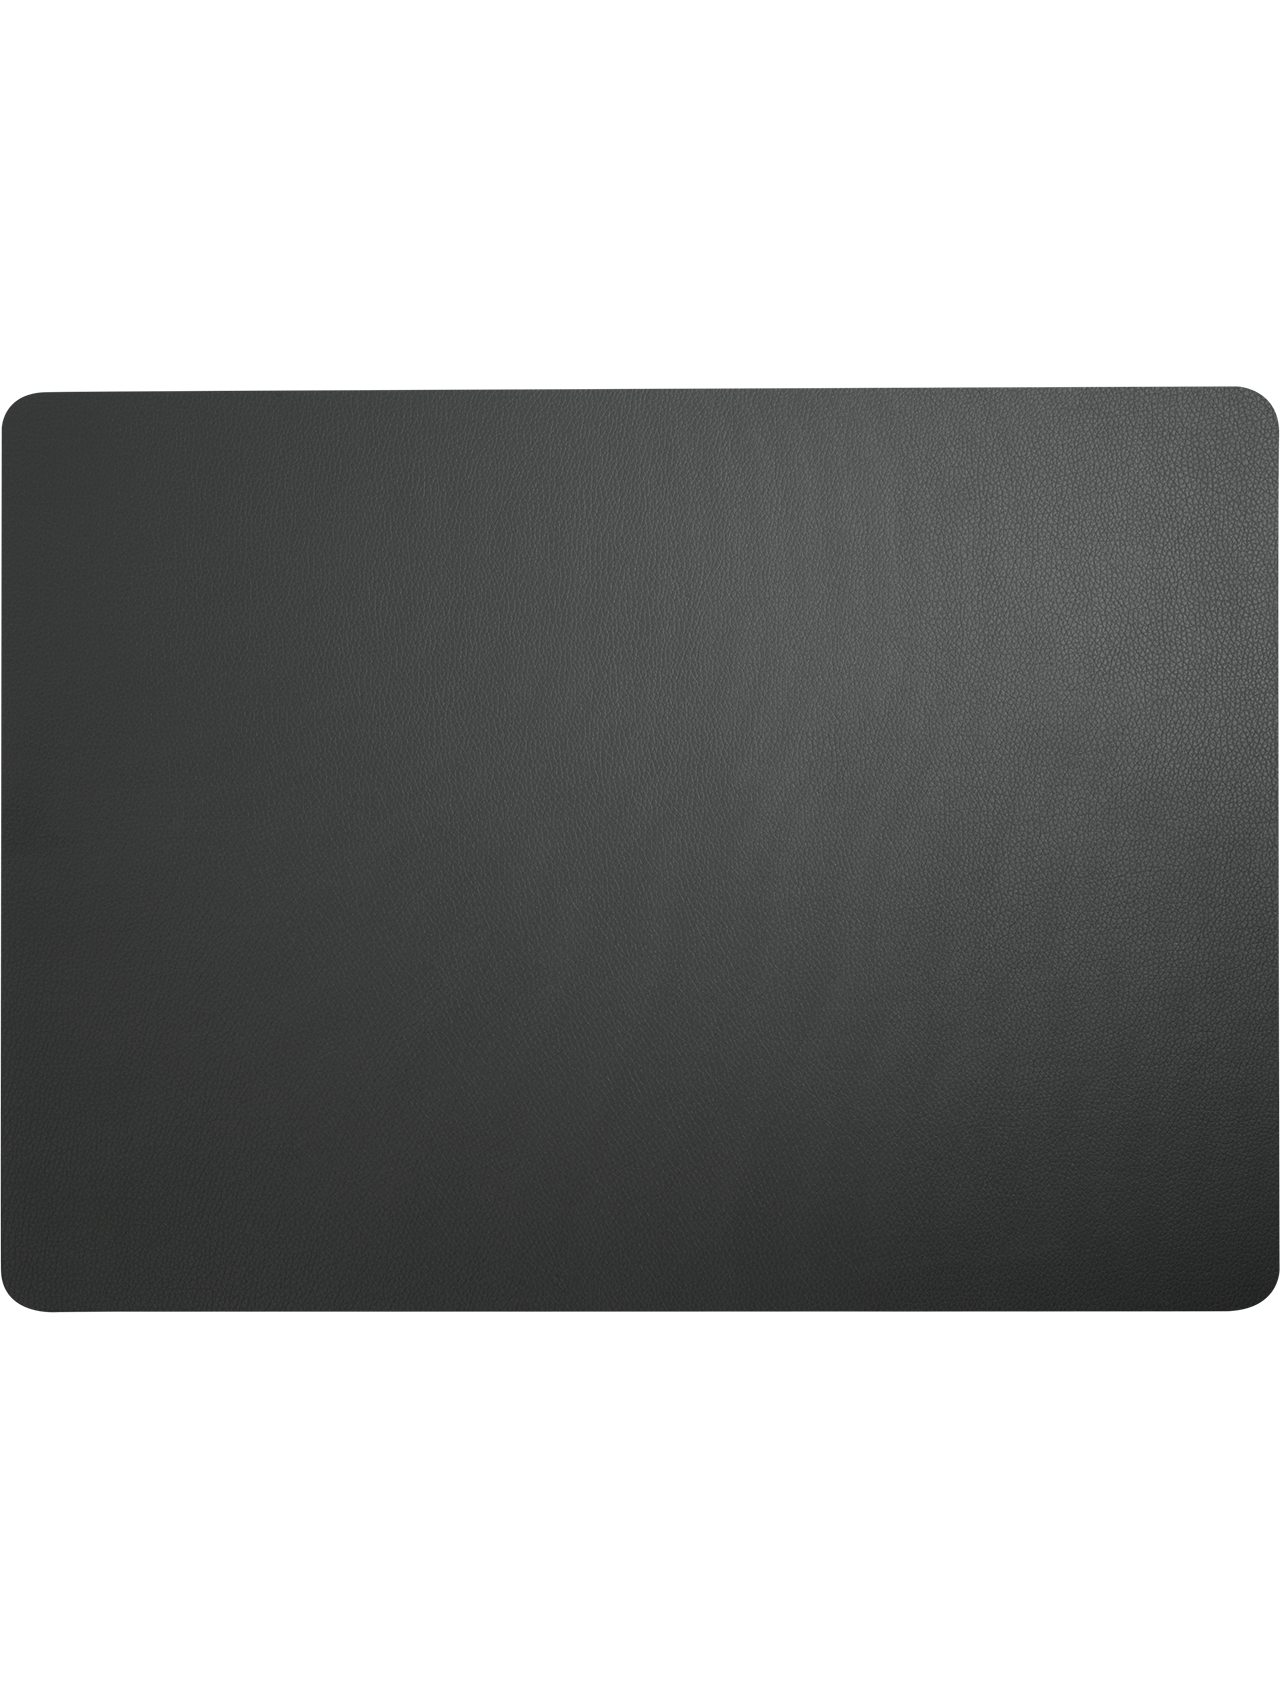 ASA leather optic Tischset eckig basalt 46 x 33 cm PU